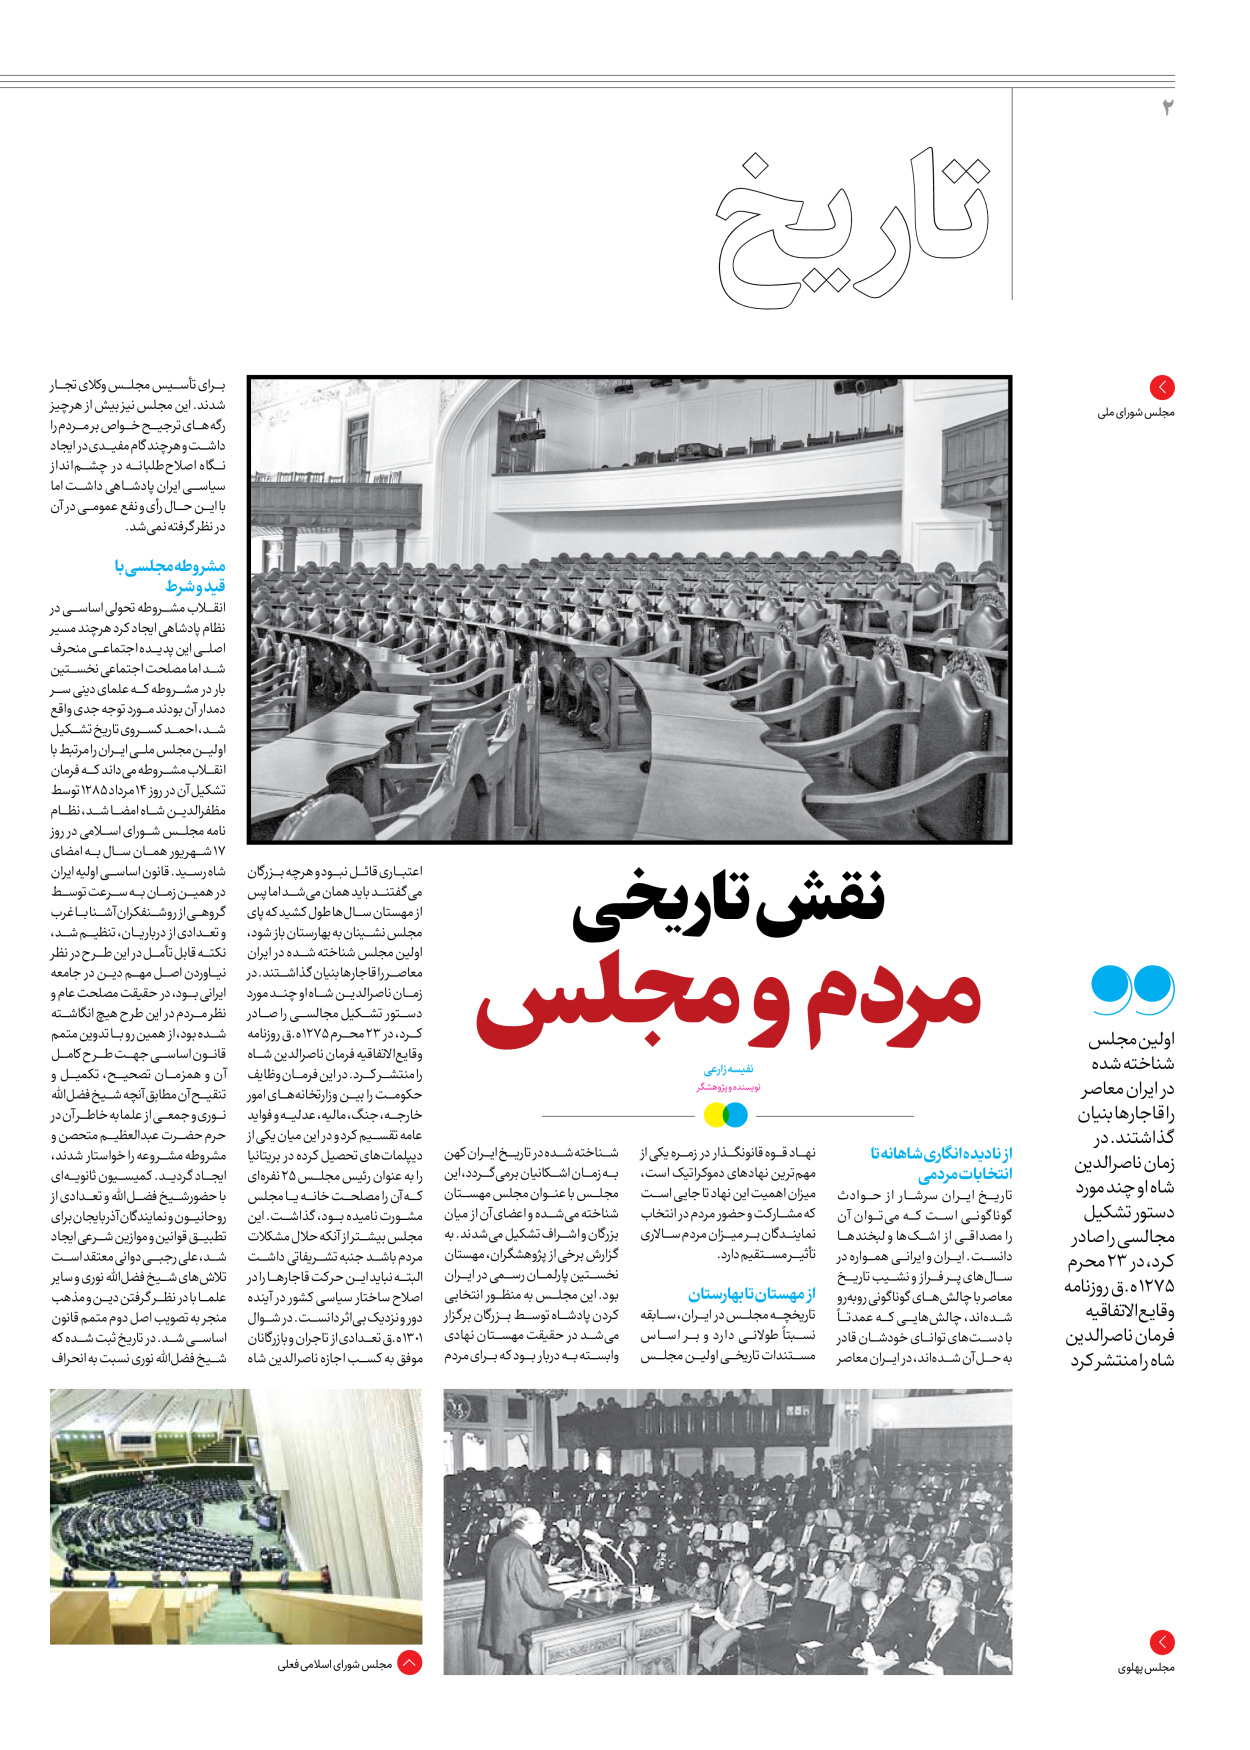 روزنامه ایران - ویژه نامه جمعه ۶۲ - ۱۰ اسفند ۱۴۰۲ - صفحه ۲